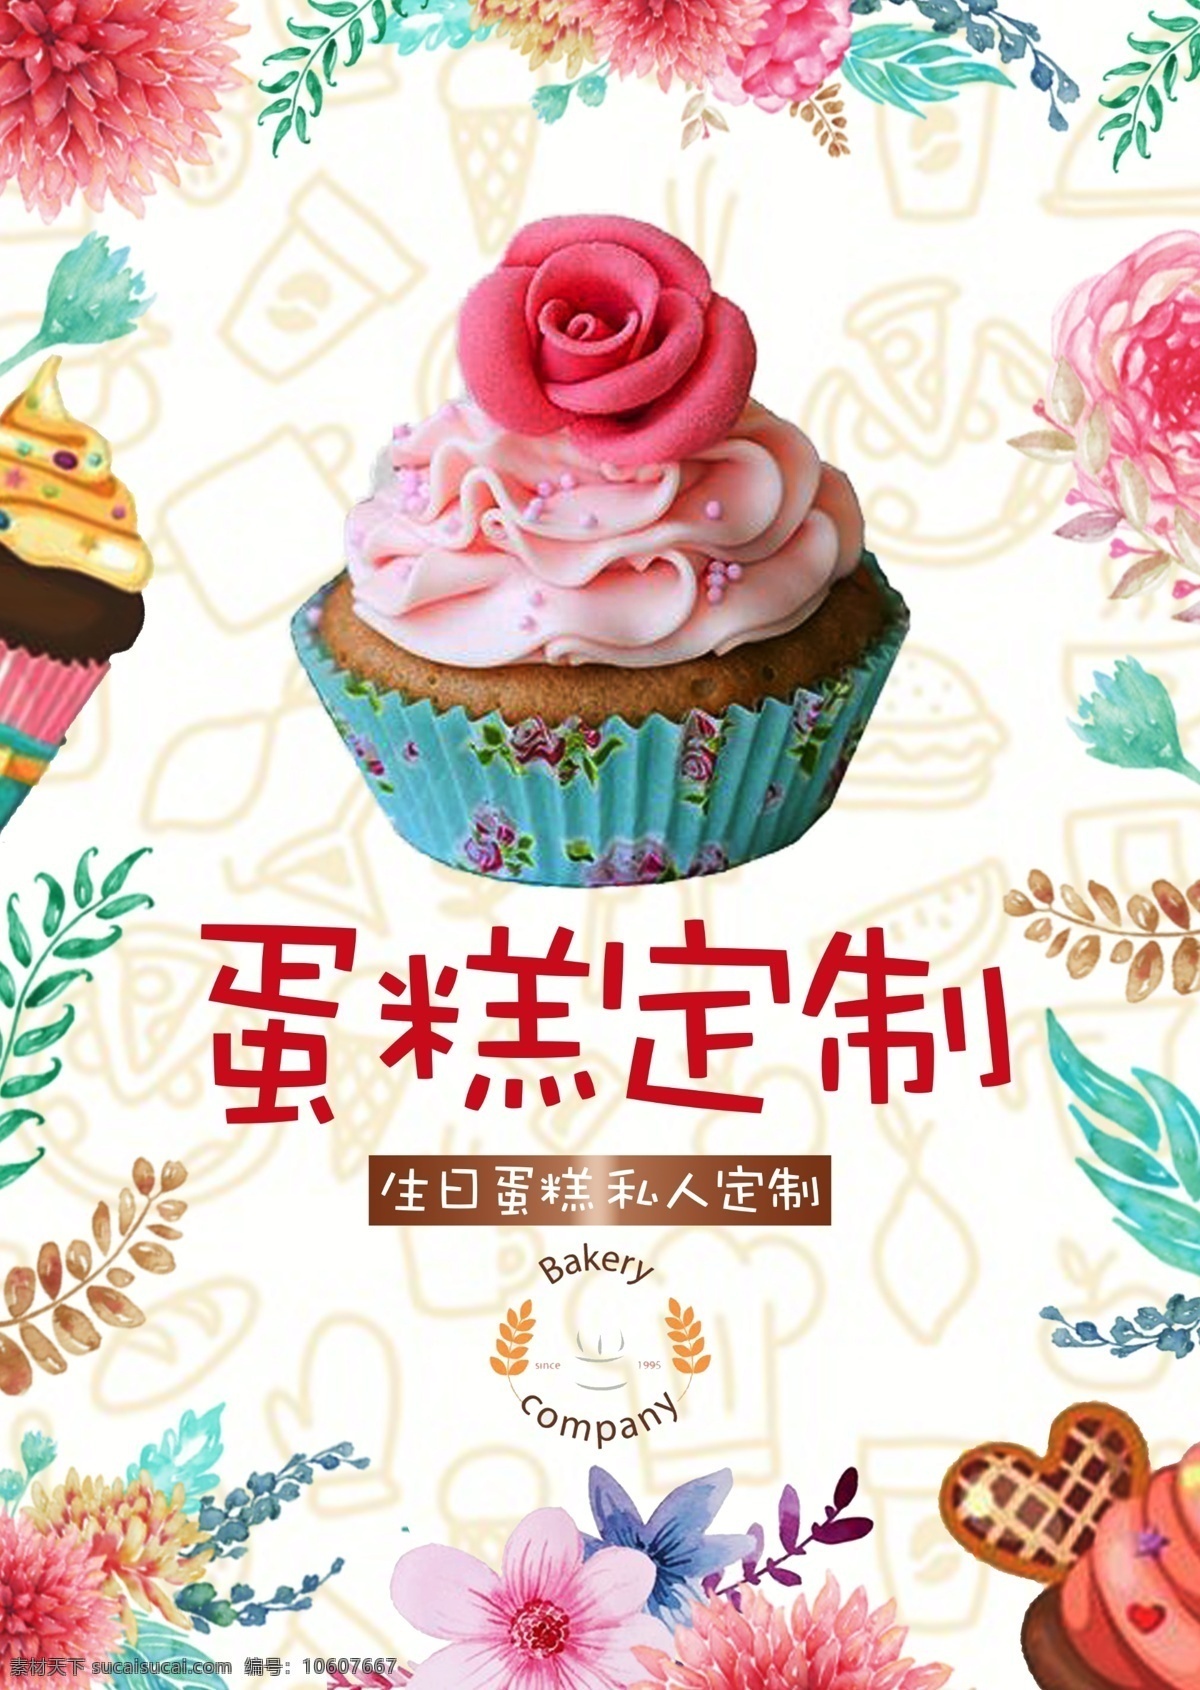 蛋糕定制 蛋糕海报 蛋糕 花朵 烘焙 美食 可口 甜点 少女 蛋糕店 宣传单 小白创作